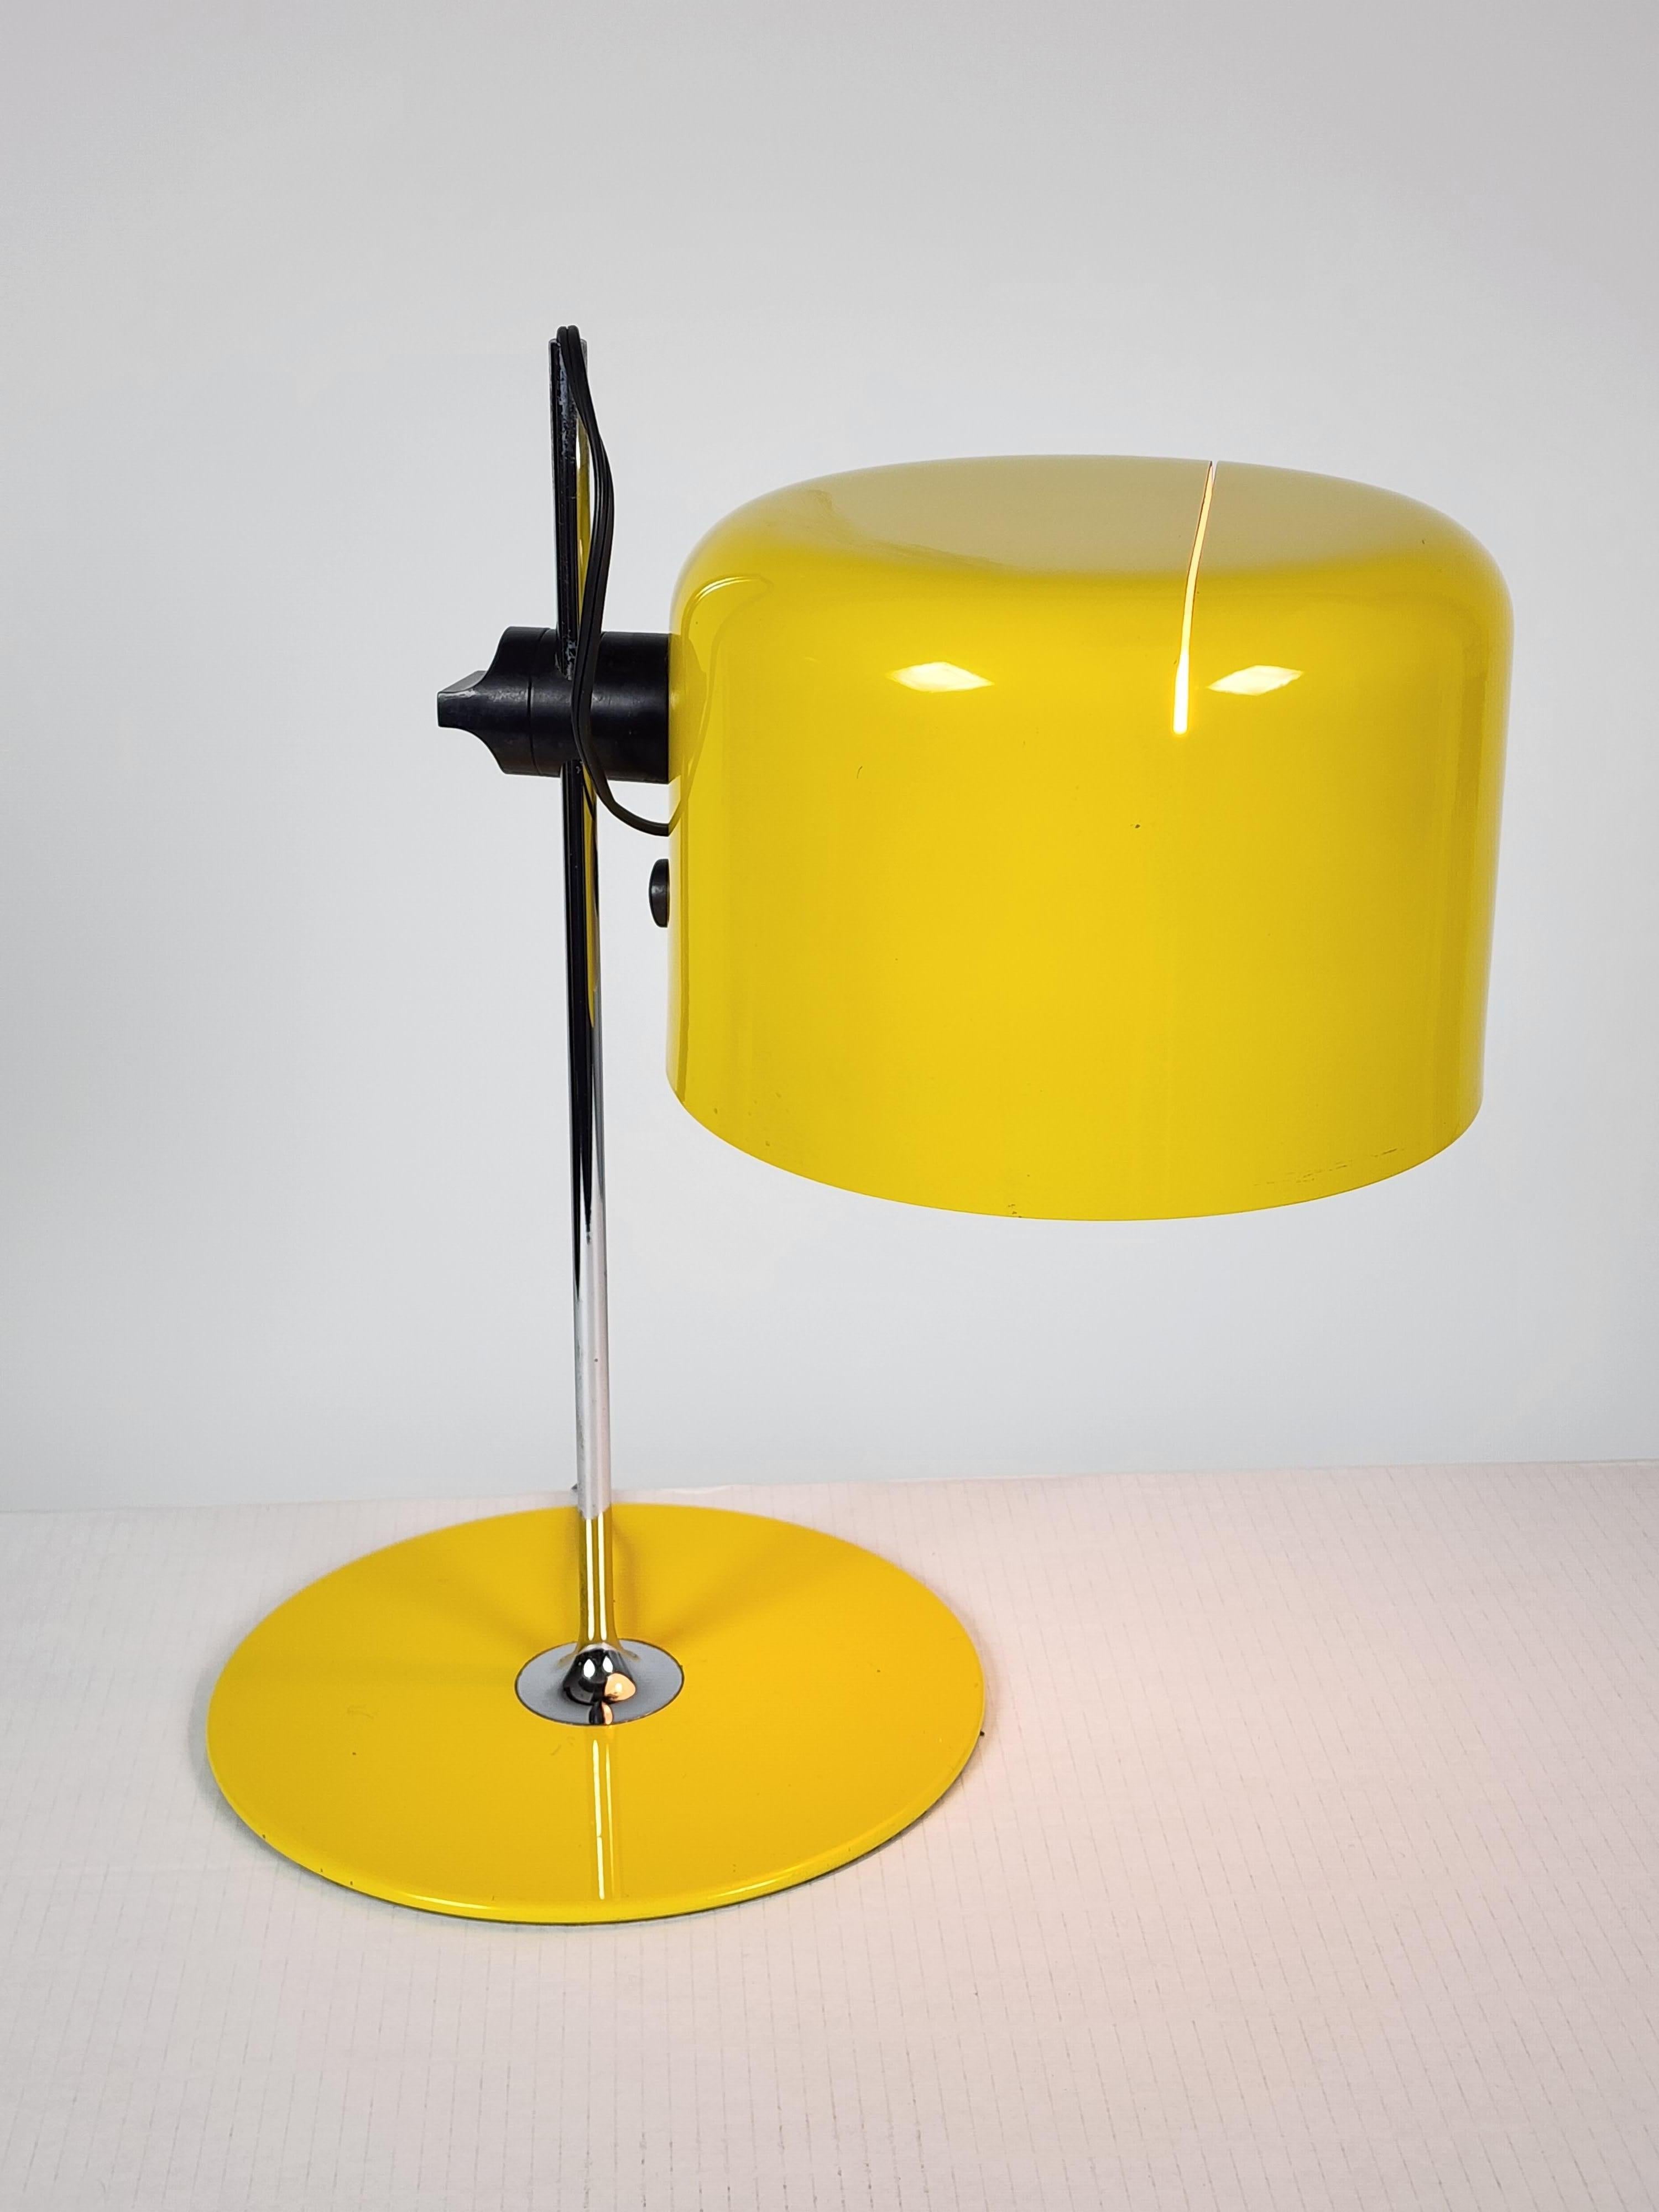 1967  Modèle précoce 2202  ''Coupe''  lampe de table de Joe Colombo  pour Guiseppe Ostuni, propriétaire de  Oluce .

Teinte classique à fente dans un jaune flamboyant.  finition brillante  . 

Bien fait avec  solide  structure et matériel .